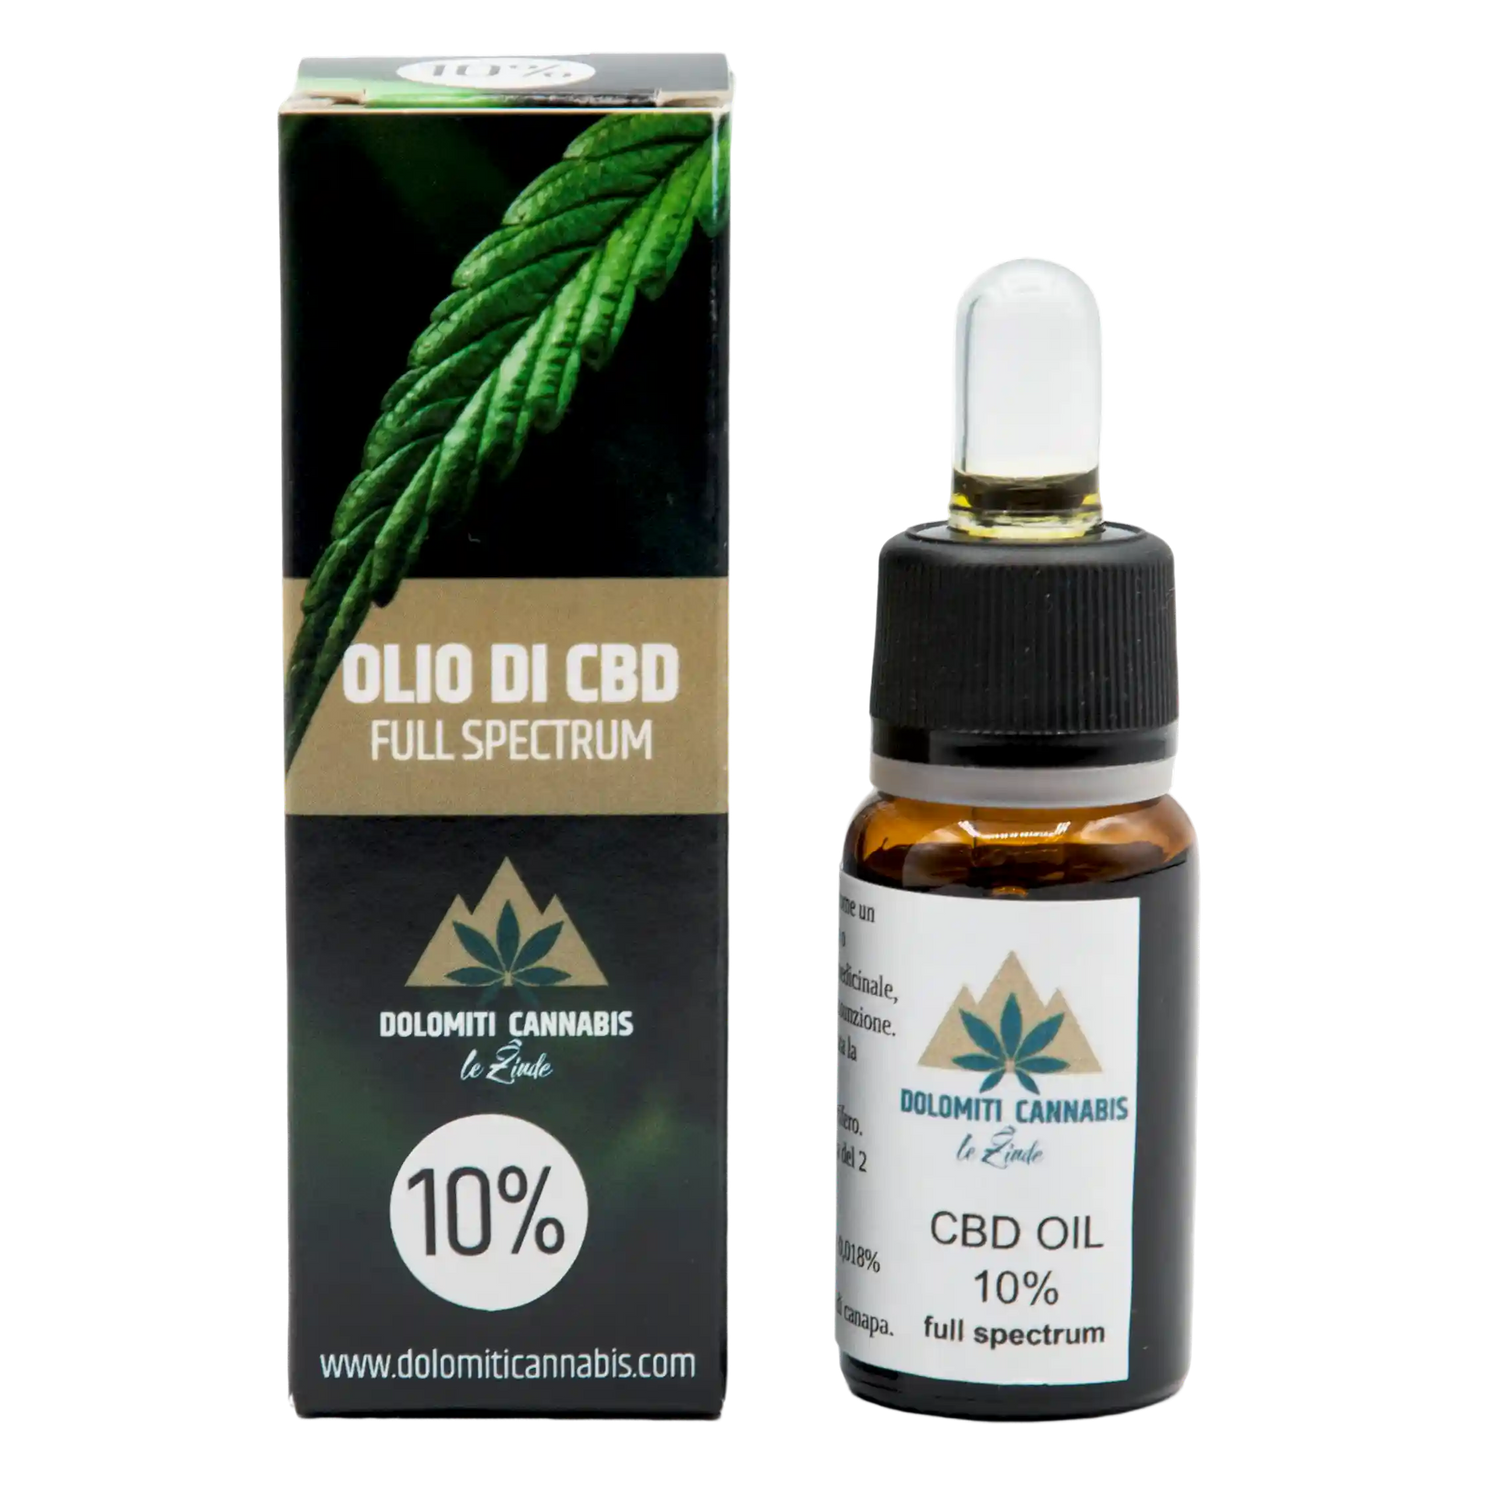 Olio CBD 10% 10ml dolomiticannabis